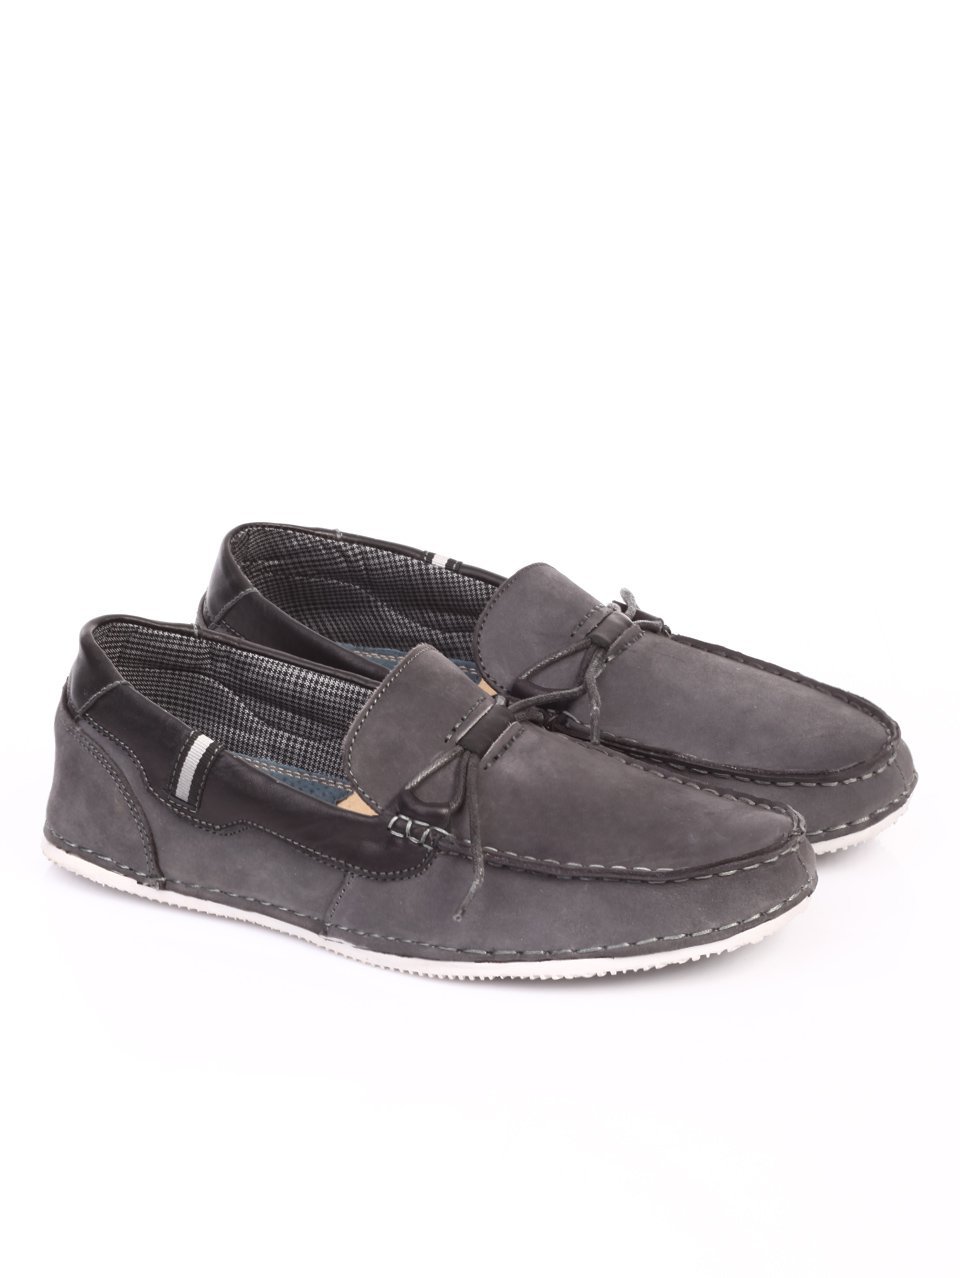 Mъжки обувки от естествен набук в сиво 7N-17393 grey